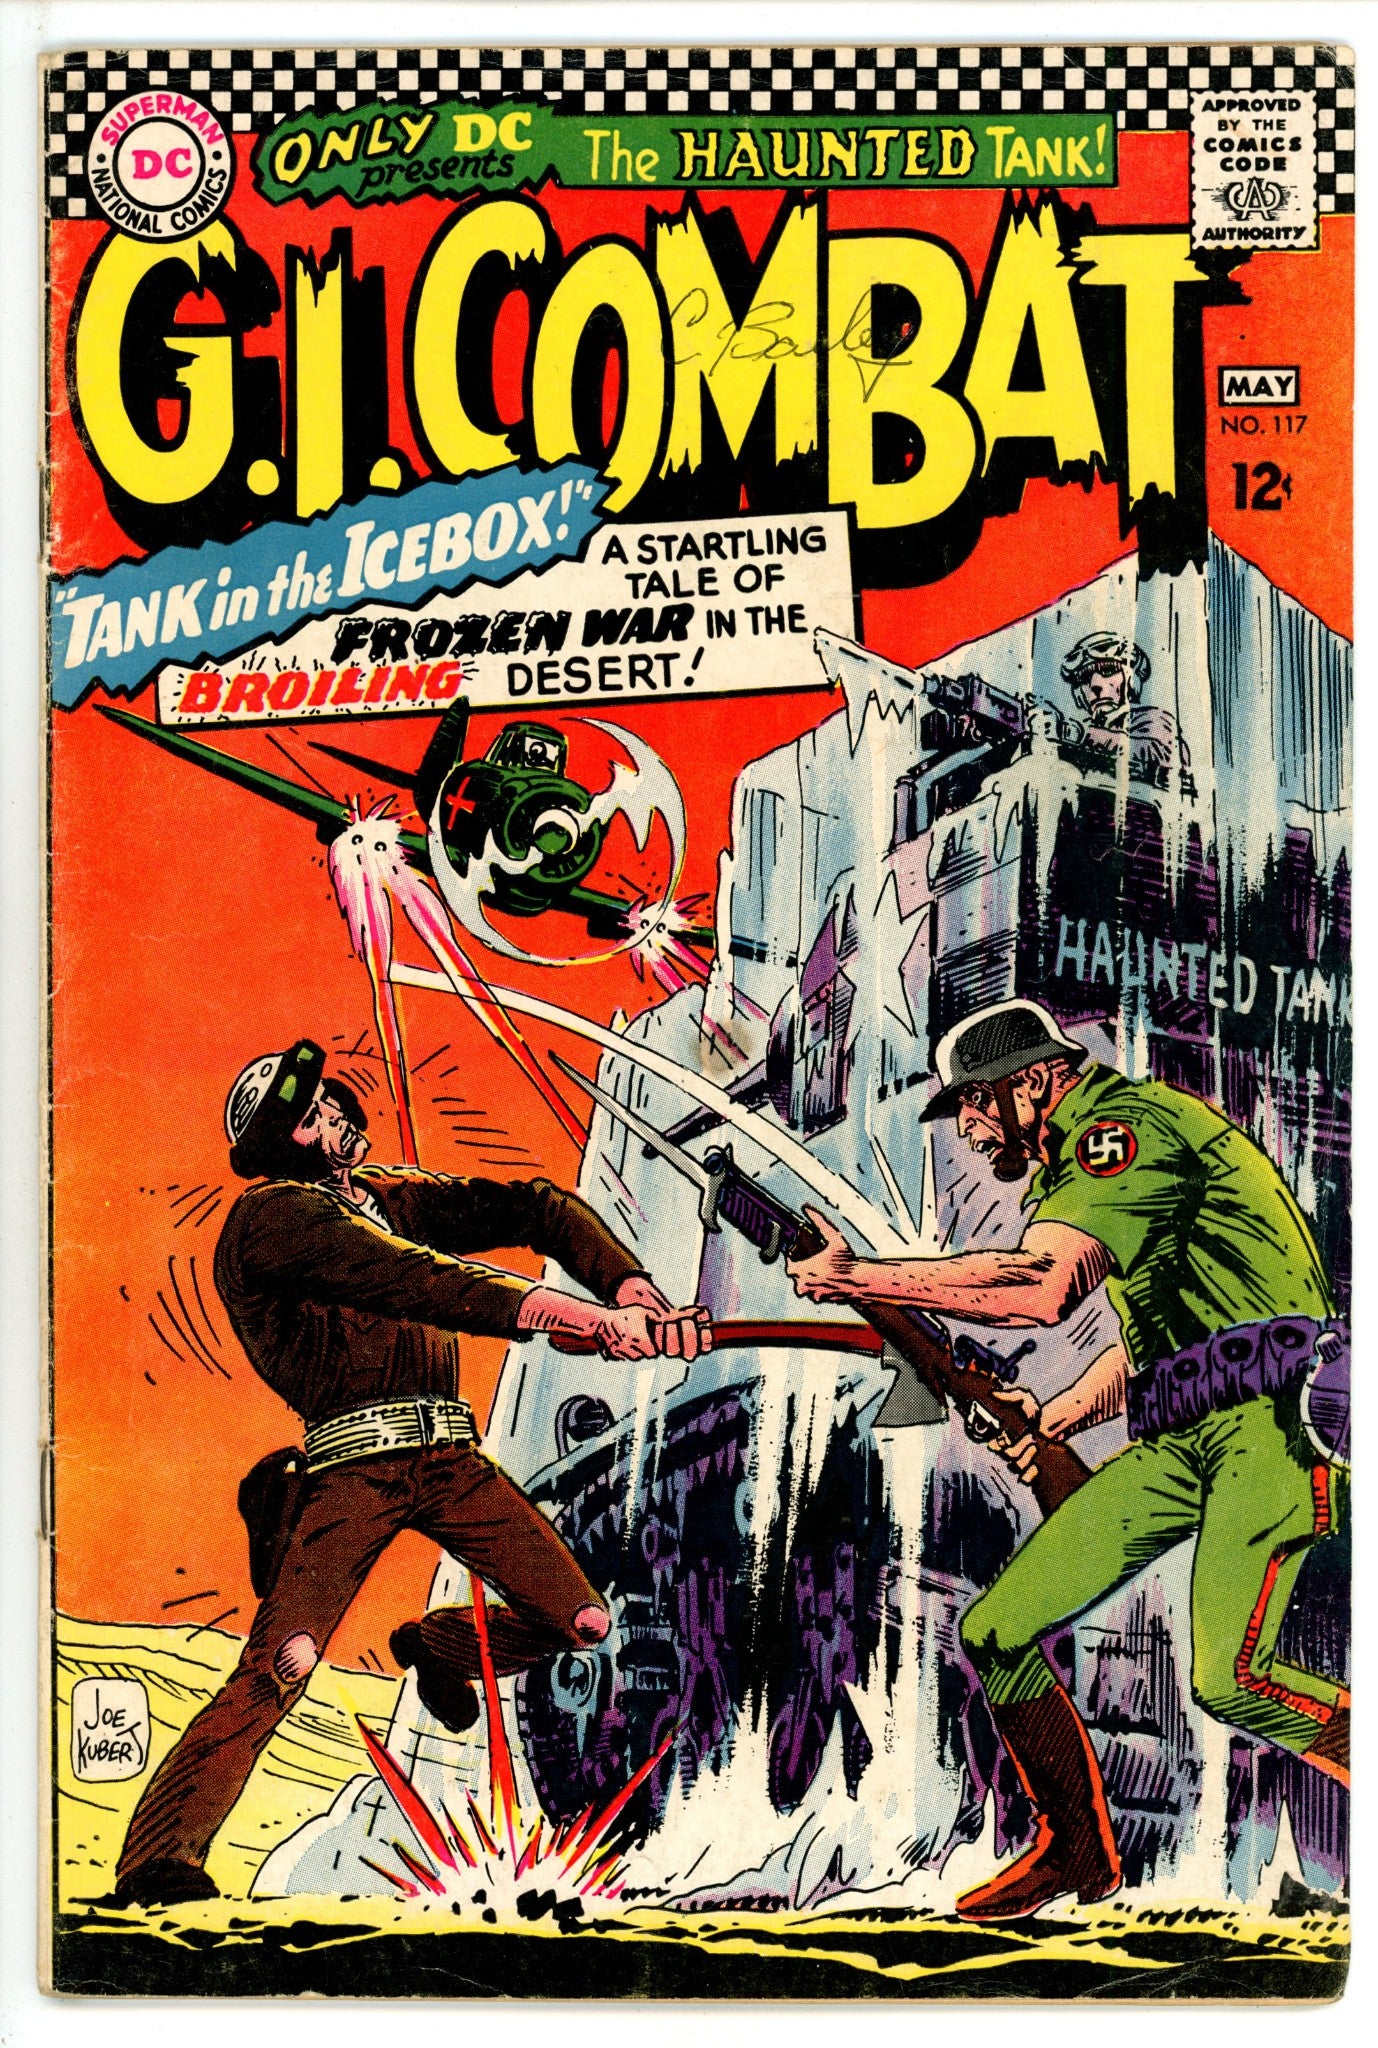 G.I. Combat Vol 1 117 VG (4.0) (1966) 